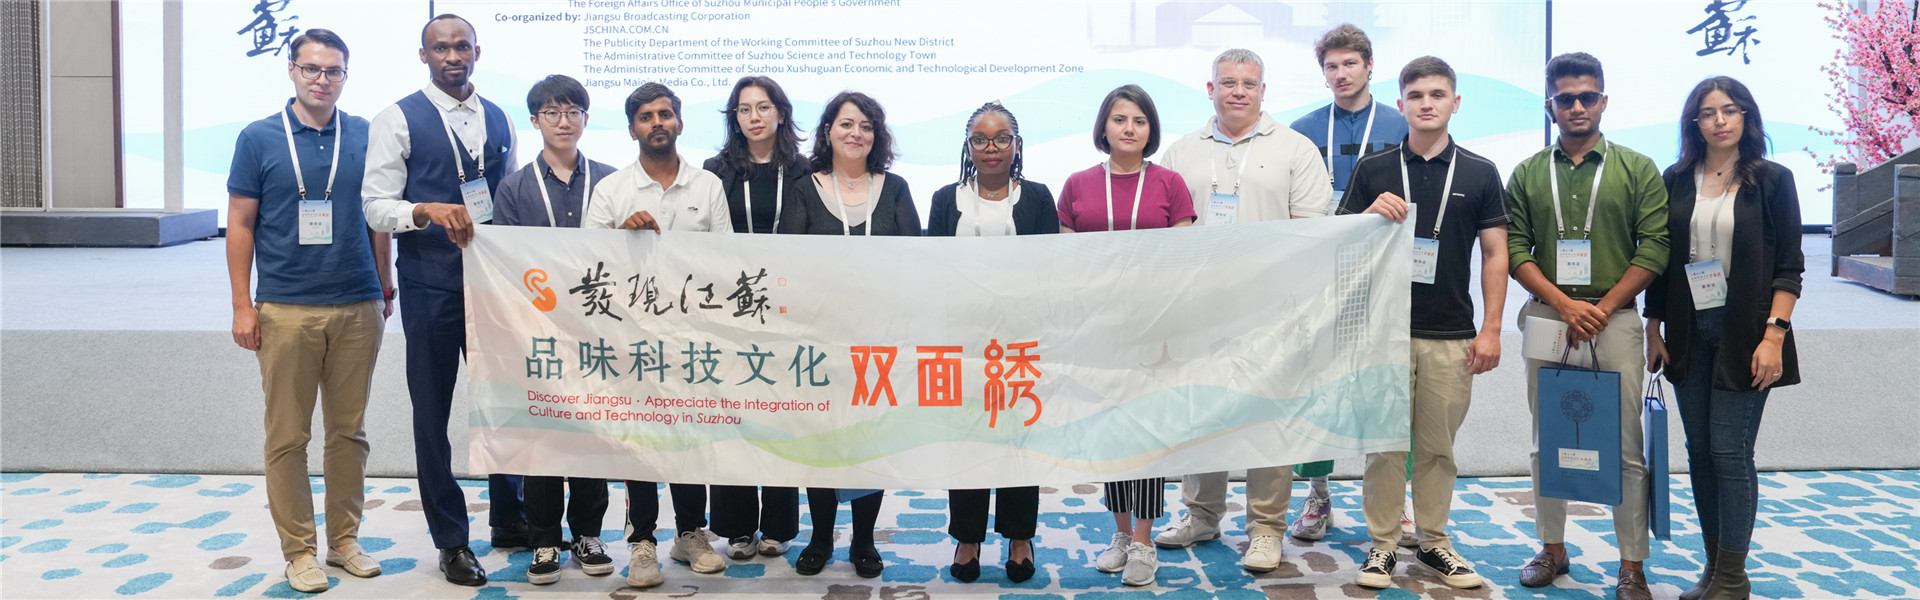 「発見江蘇」シリーズイベントが蘇州高新区で開催、外国友人が「両面刺繍」で文化と科学技術を楽しむ